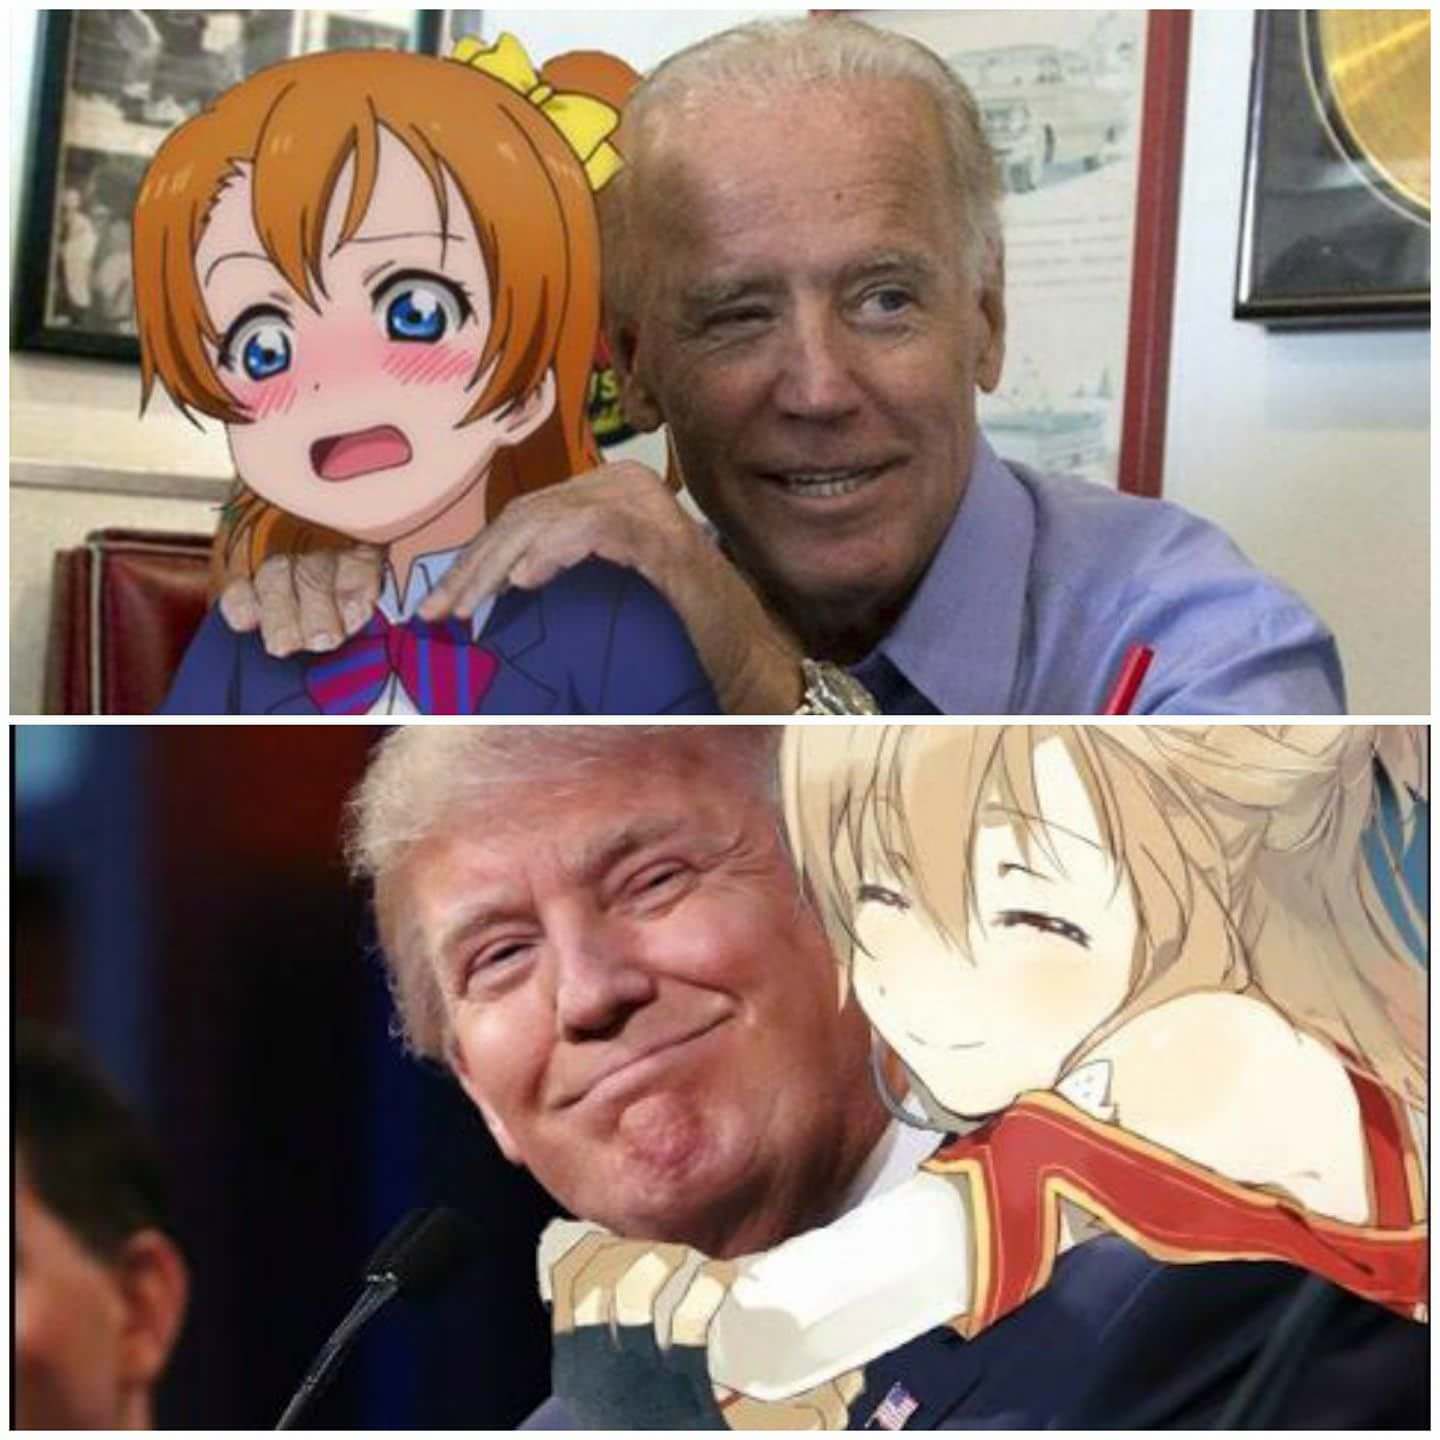 High Quality Joe Biden vs Donald Trump Blank Meme Template